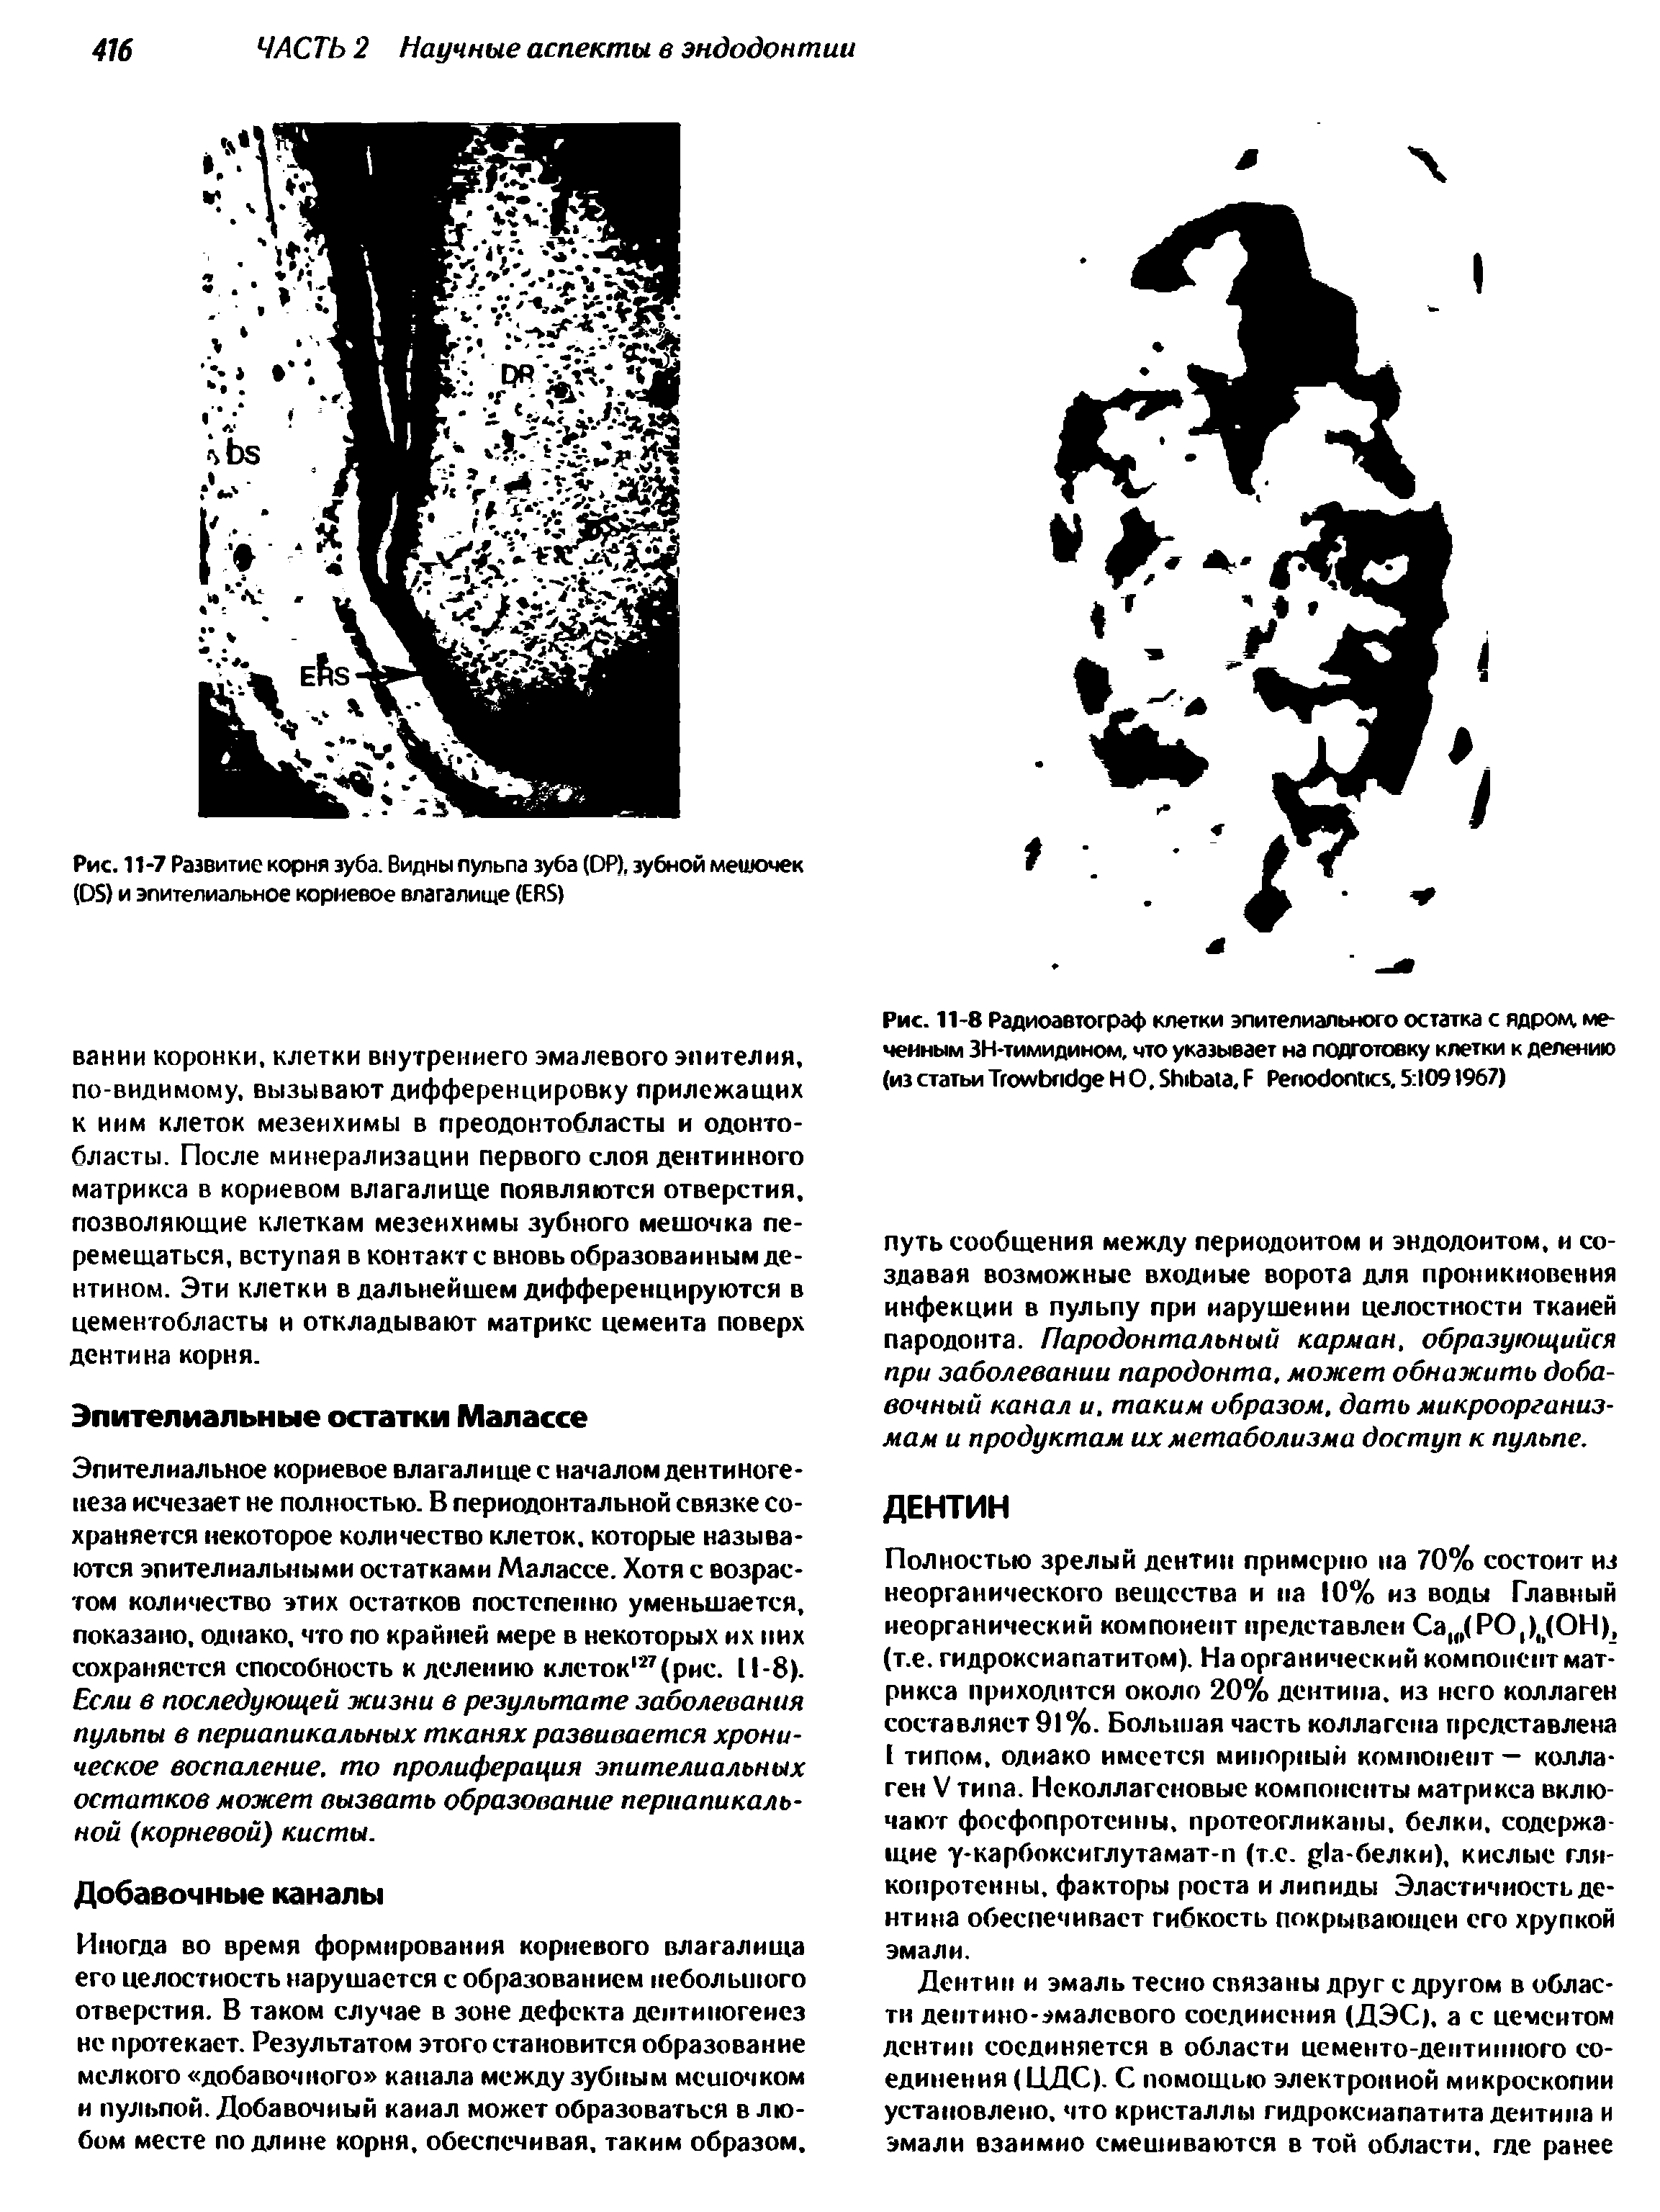 Рис. 11-8 Радиоавтограф клетки эпителиального остатка с ядром, меченным ЗН-тимидином, что указывает на подготовку клетки к делению (из статьи T Н О, S , F P . 5 1091967)...